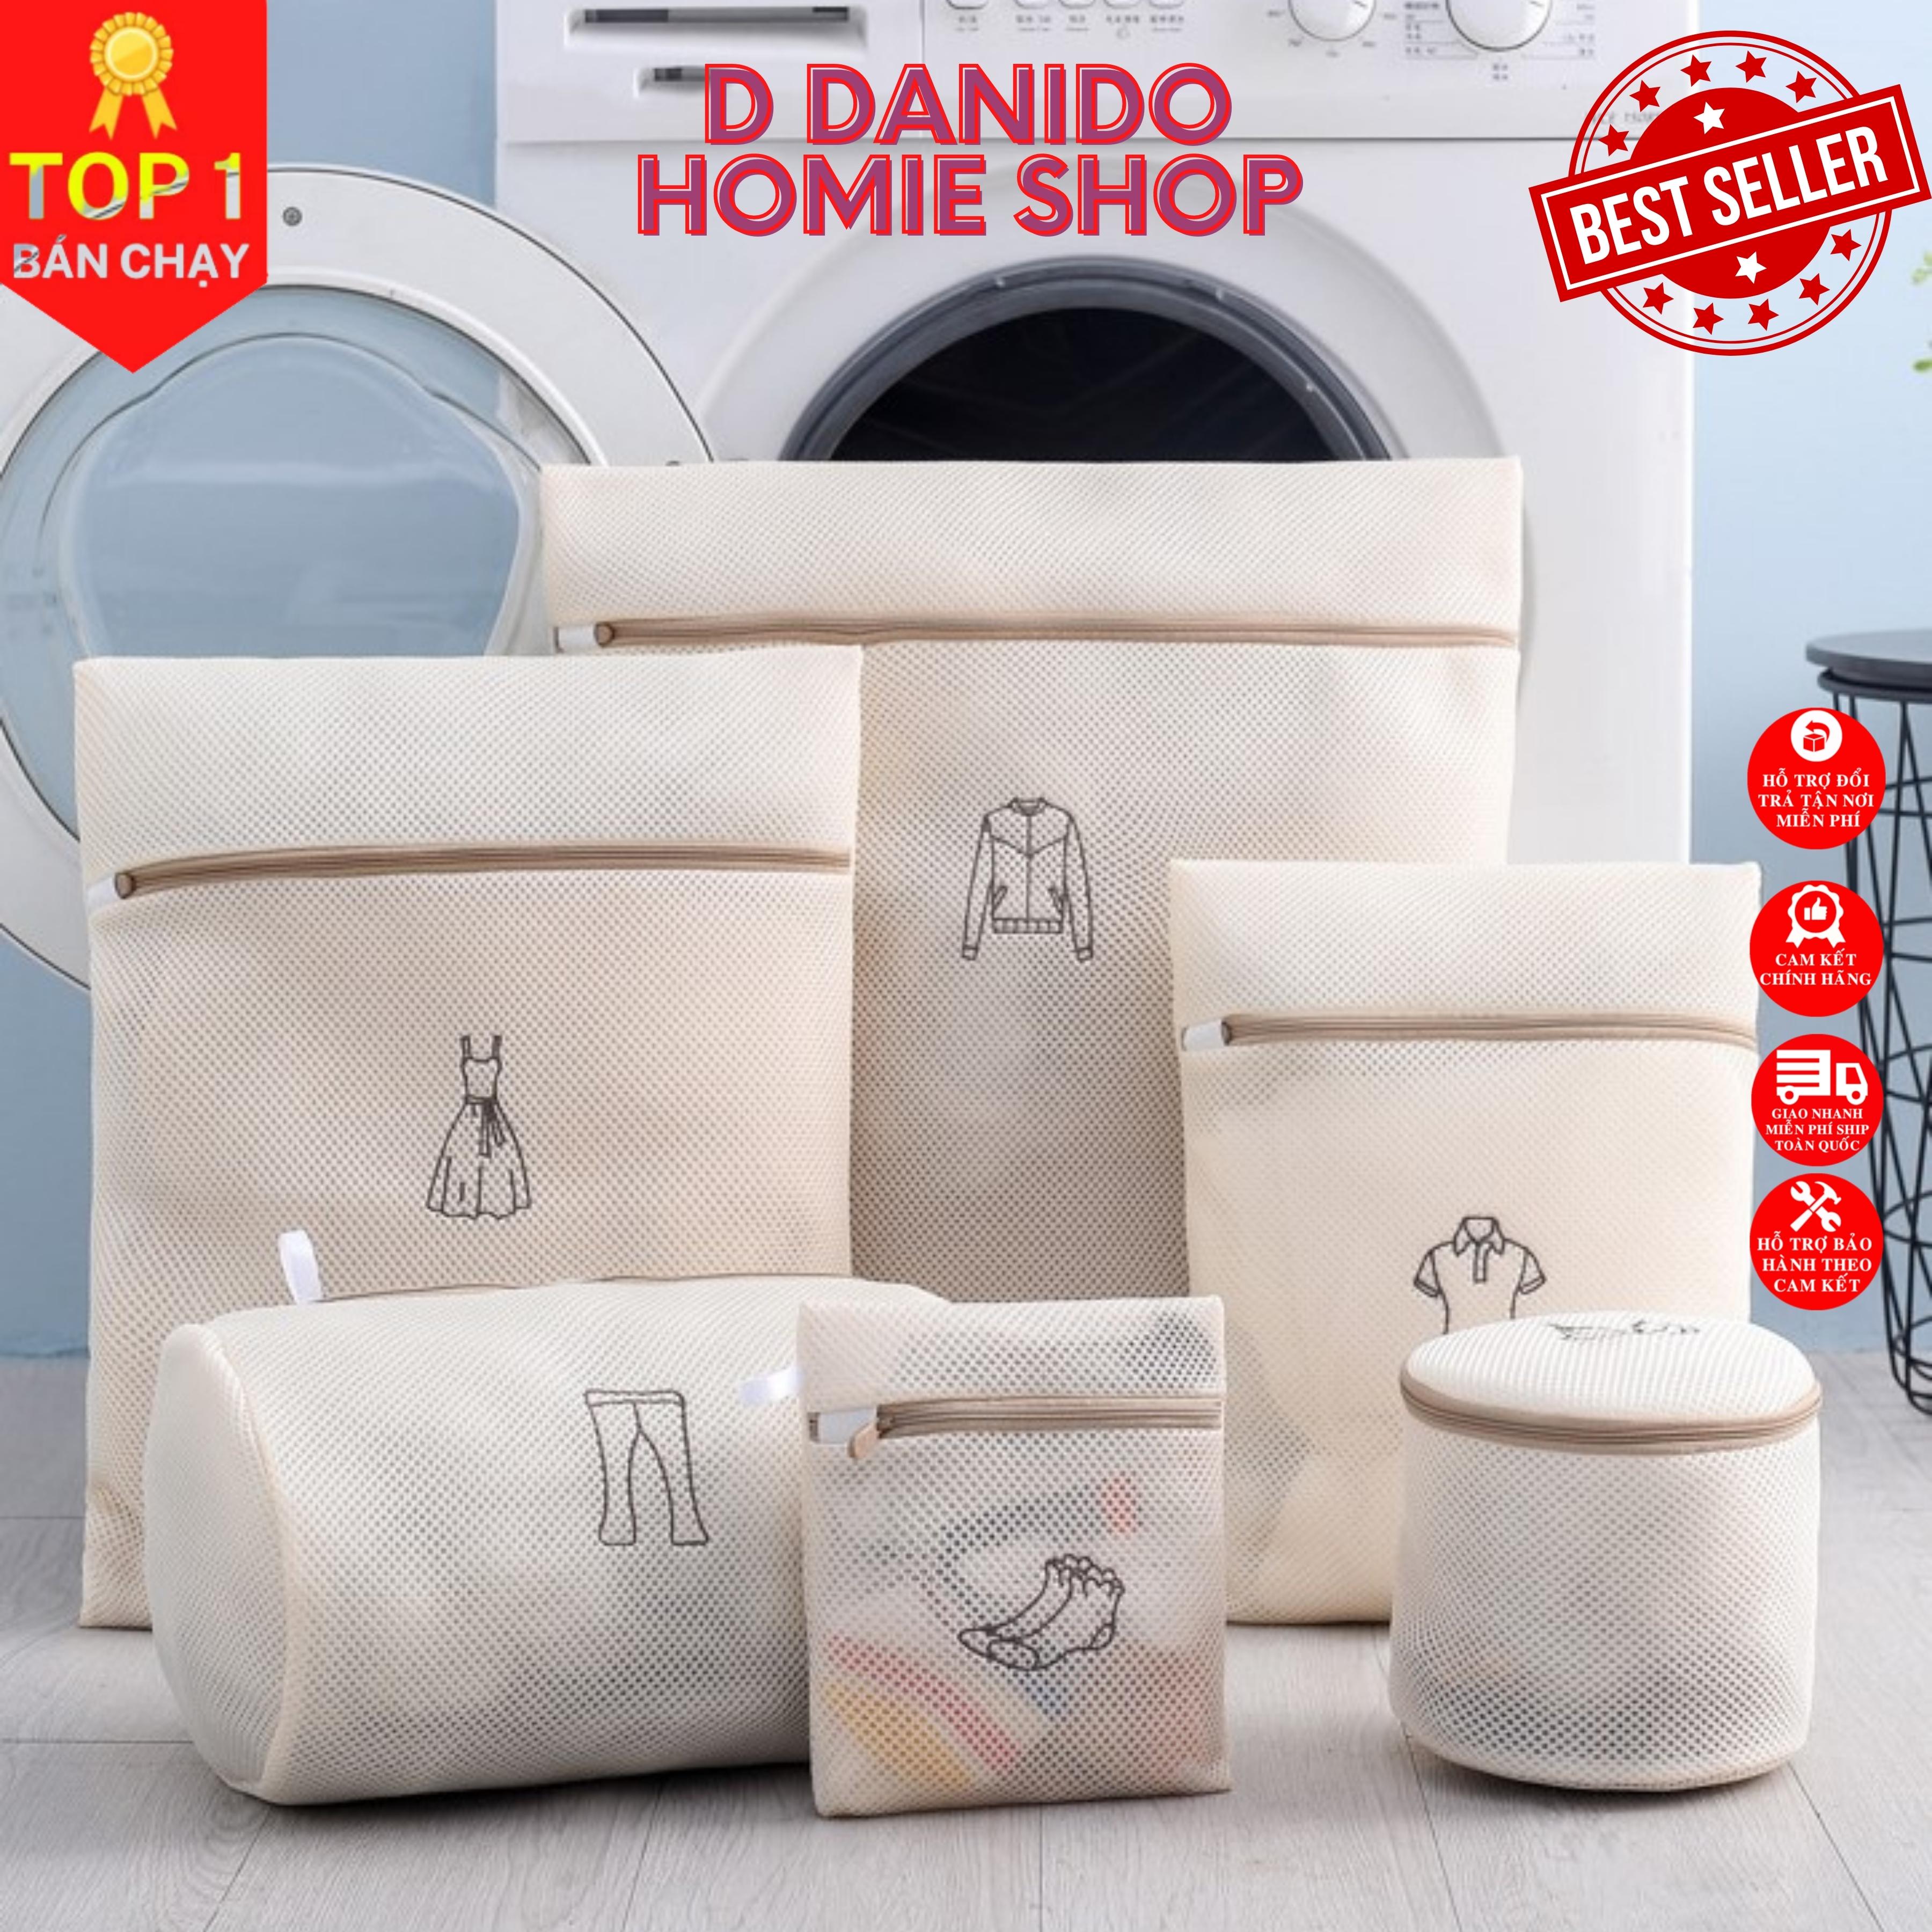 SET 6 túi giặt siêu dày 3 lớp cao cấp - Combo 6 túi lưới bảo vệ quần áo dùng cho máy giặt 3 lớp siêu bền tiện dụng chính hãng D Danido